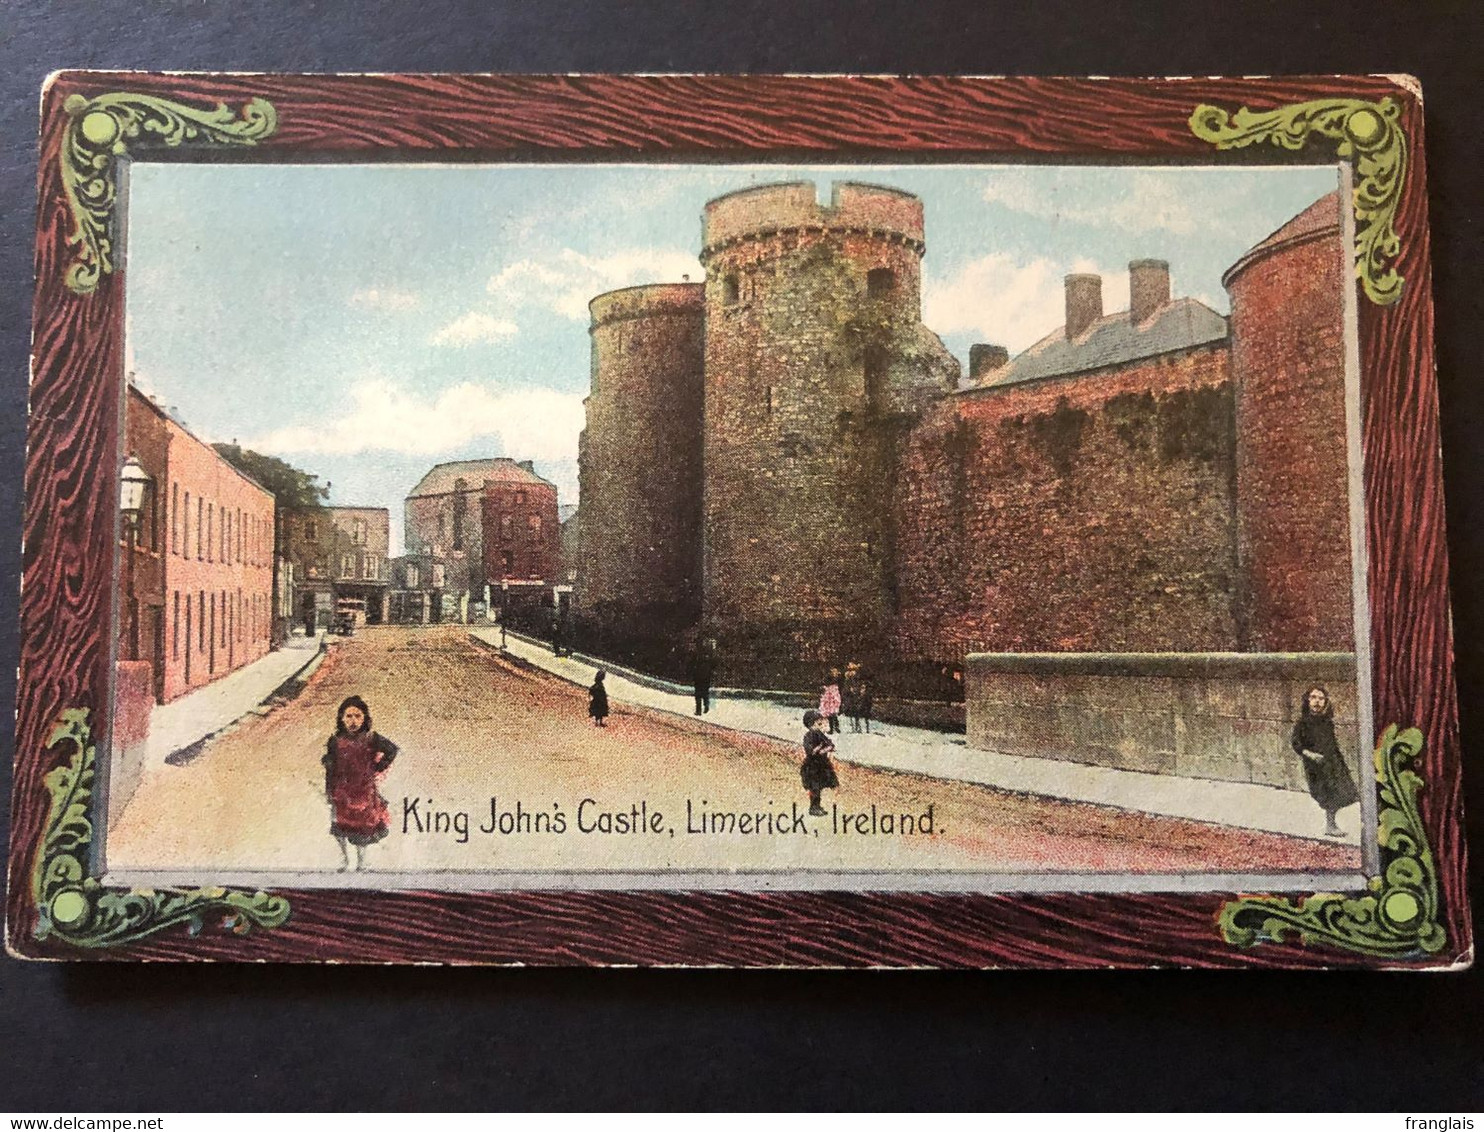 King John's Castle, Limerick - Limerick